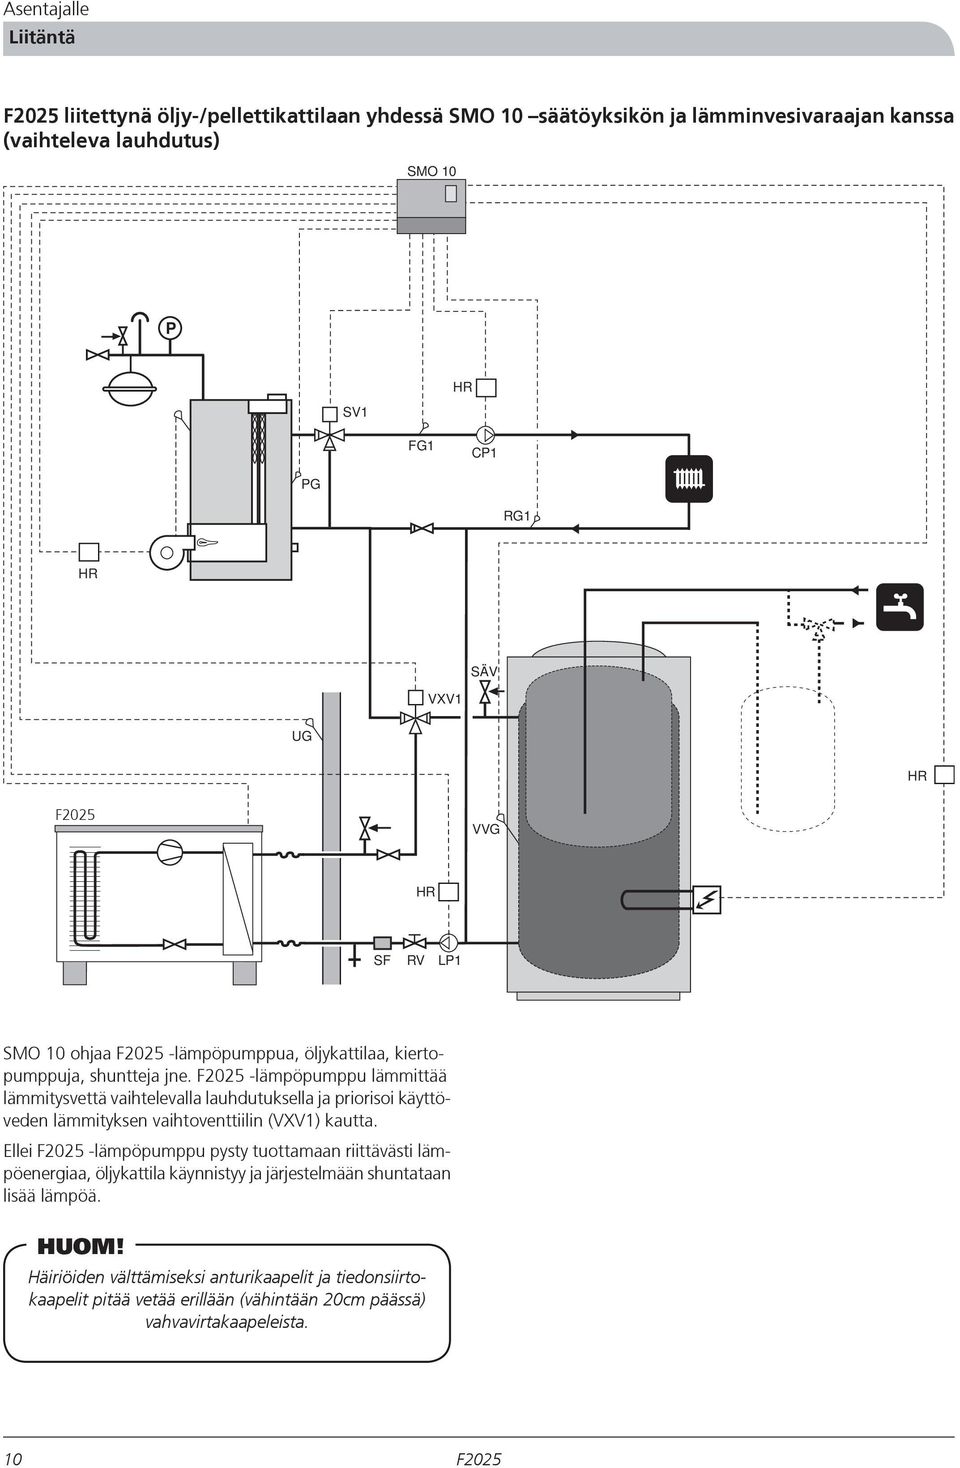 -lämpöpumppu lämmittää lämmitysvettä vaihtelevalla lauhdutuksella ja priorisoi käyttöveden lämmityksen vaihtoventtiilin (VXV1) kautta.